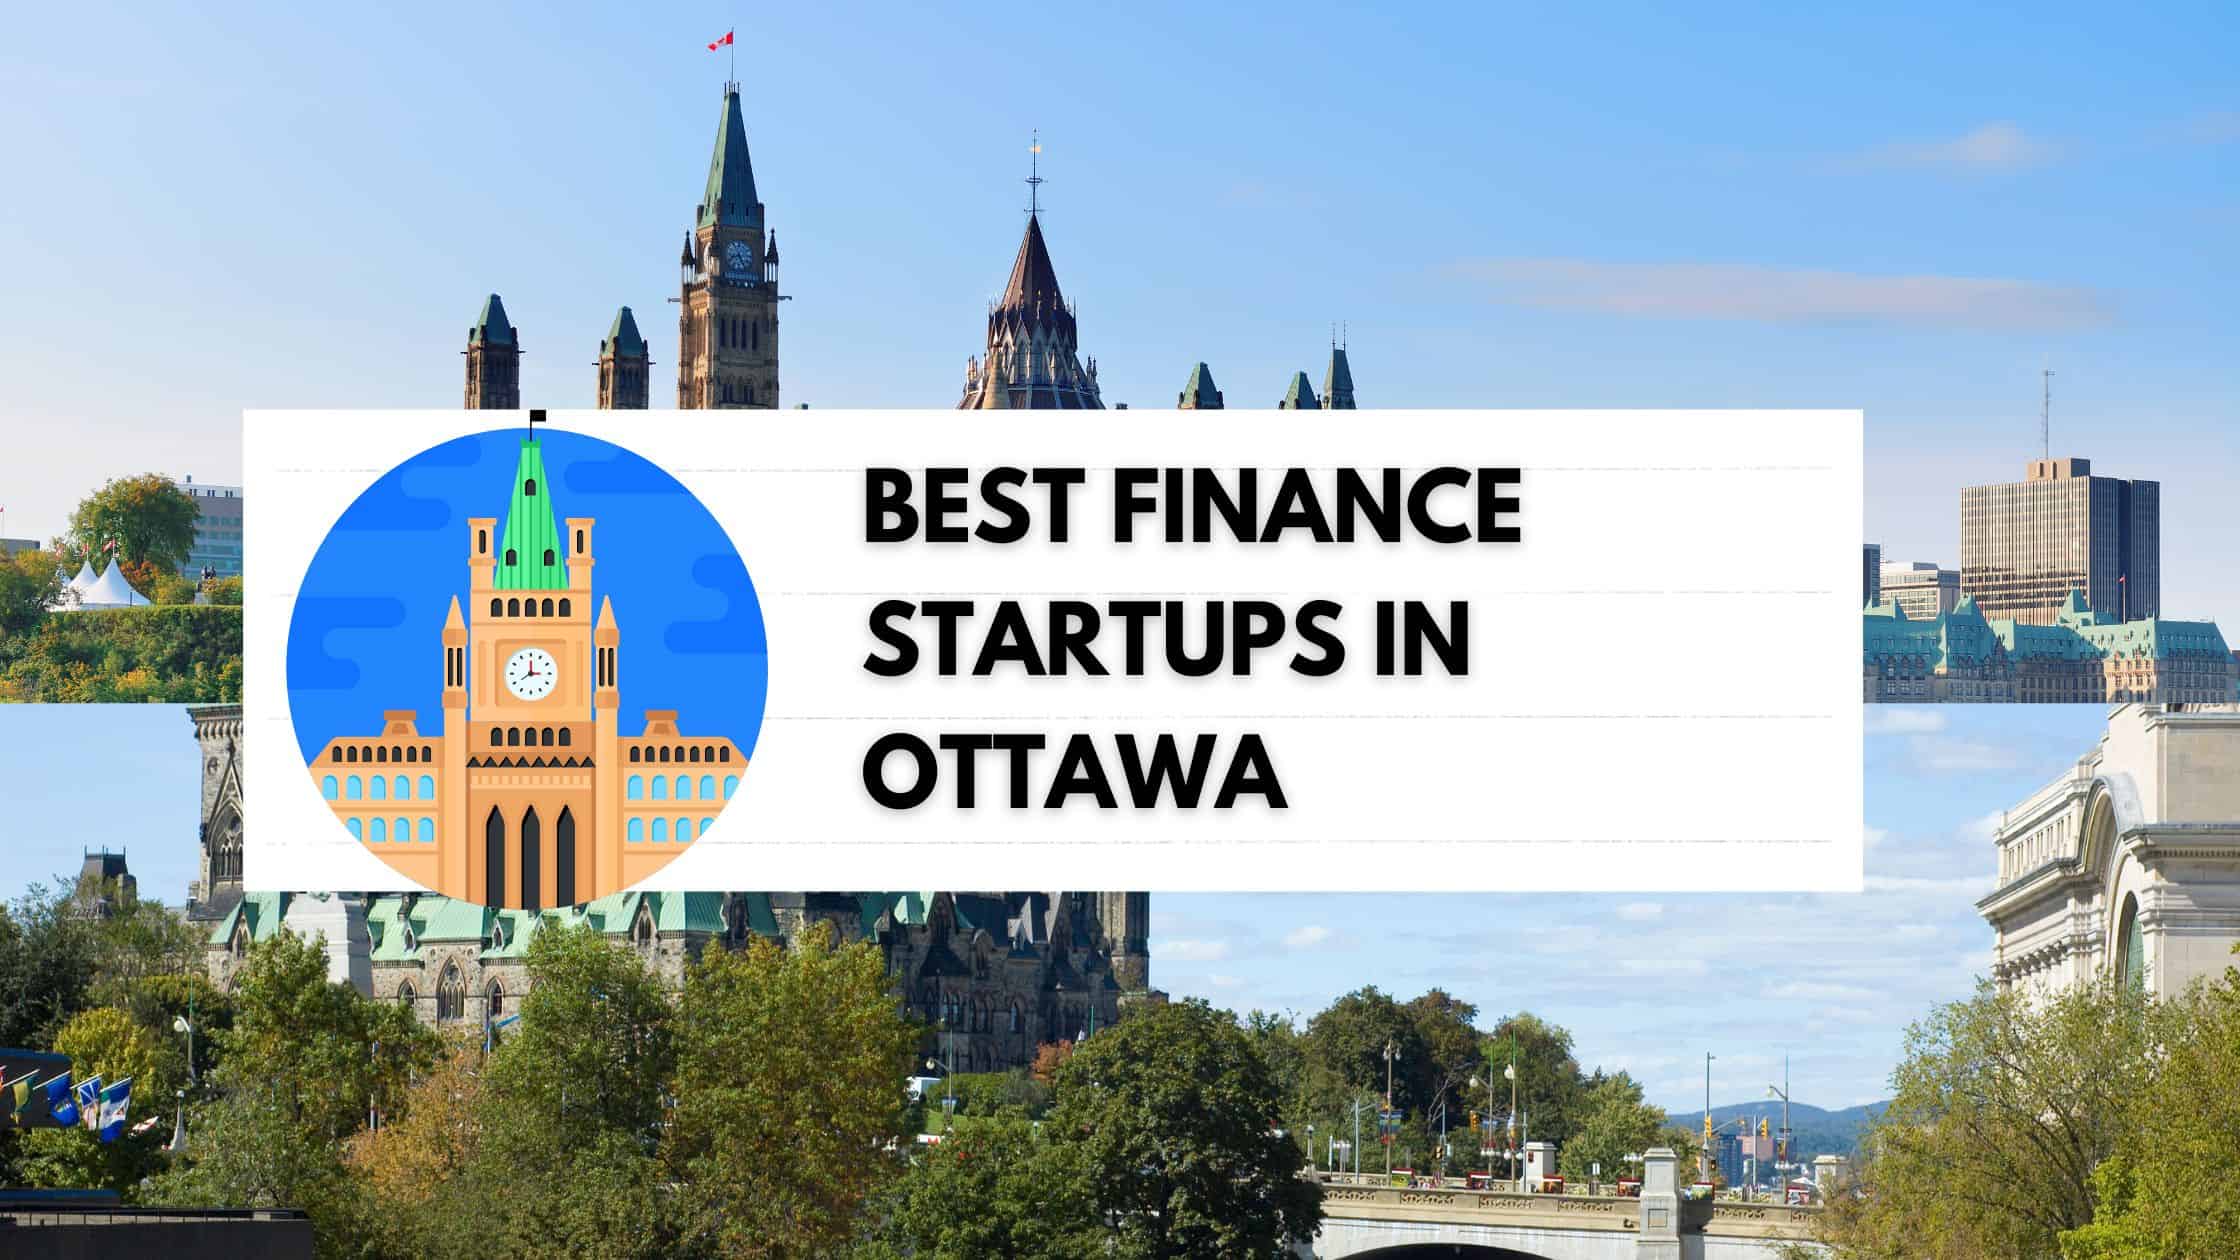 Best Finance Startups in Ottawa